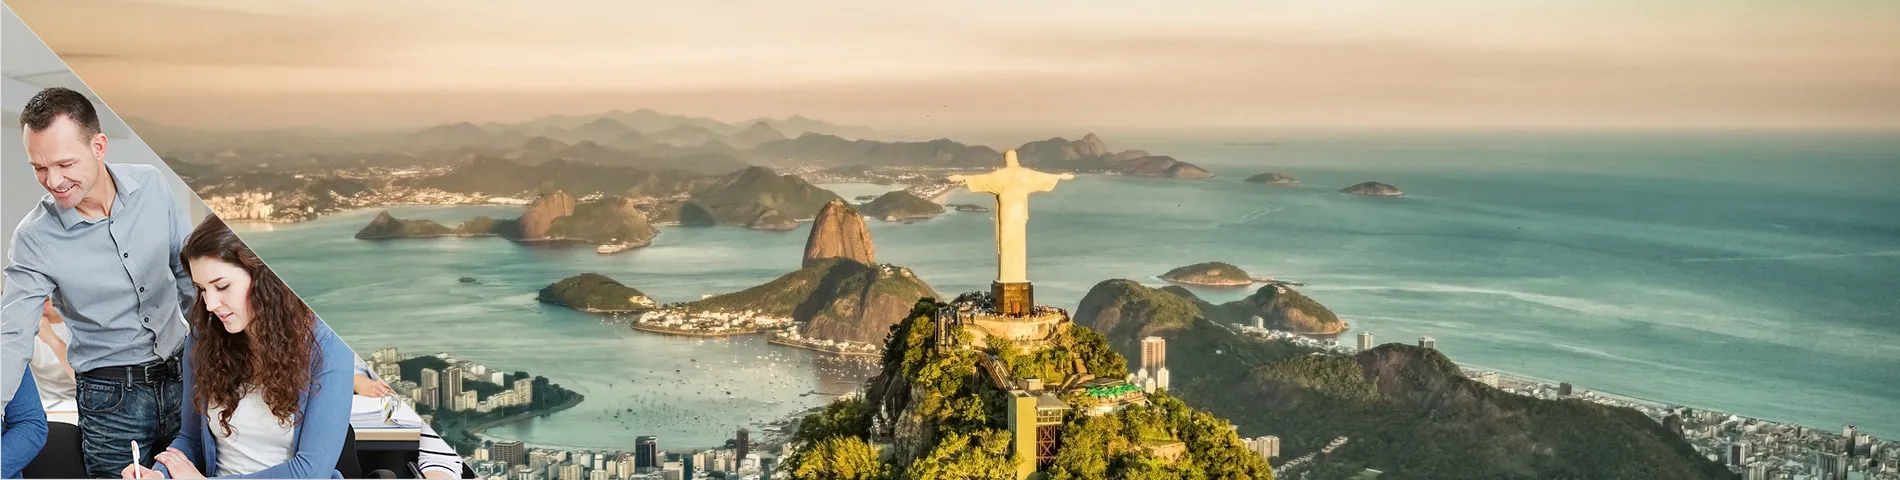 Rio de Janeiro - Combinat: Grup + Individuals